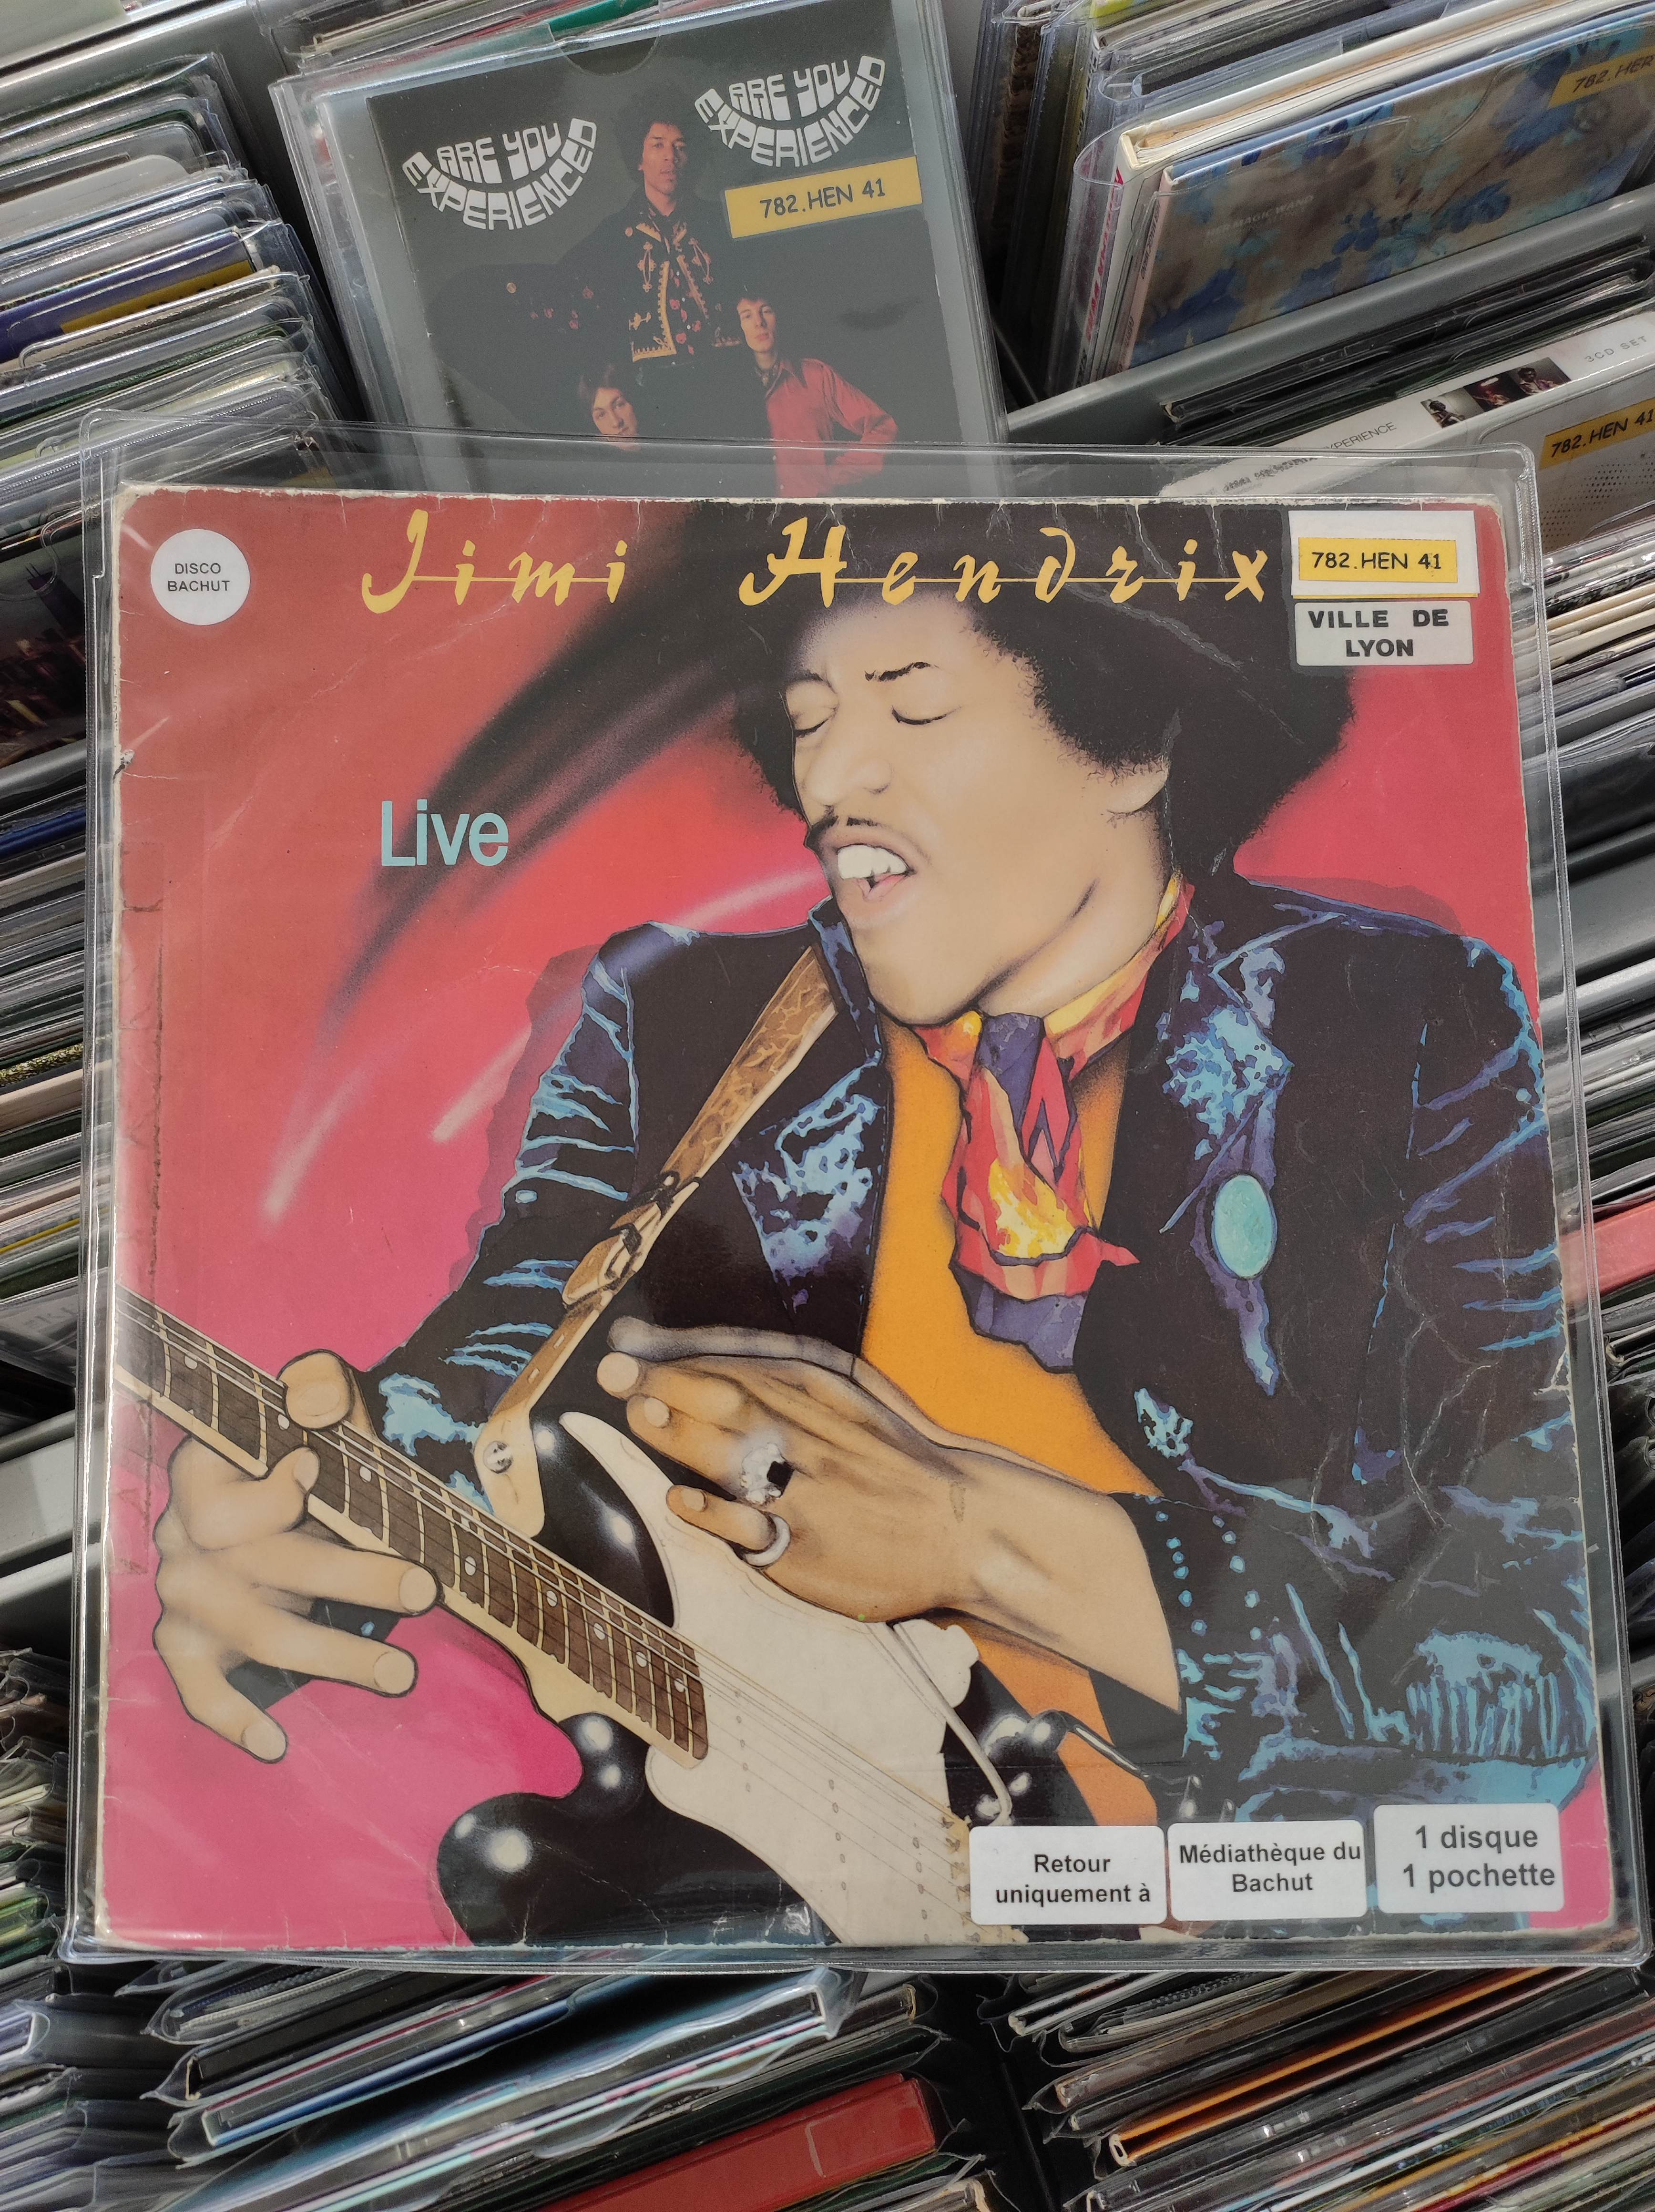 image d'illustration de Jimi Hendrix en vinyle